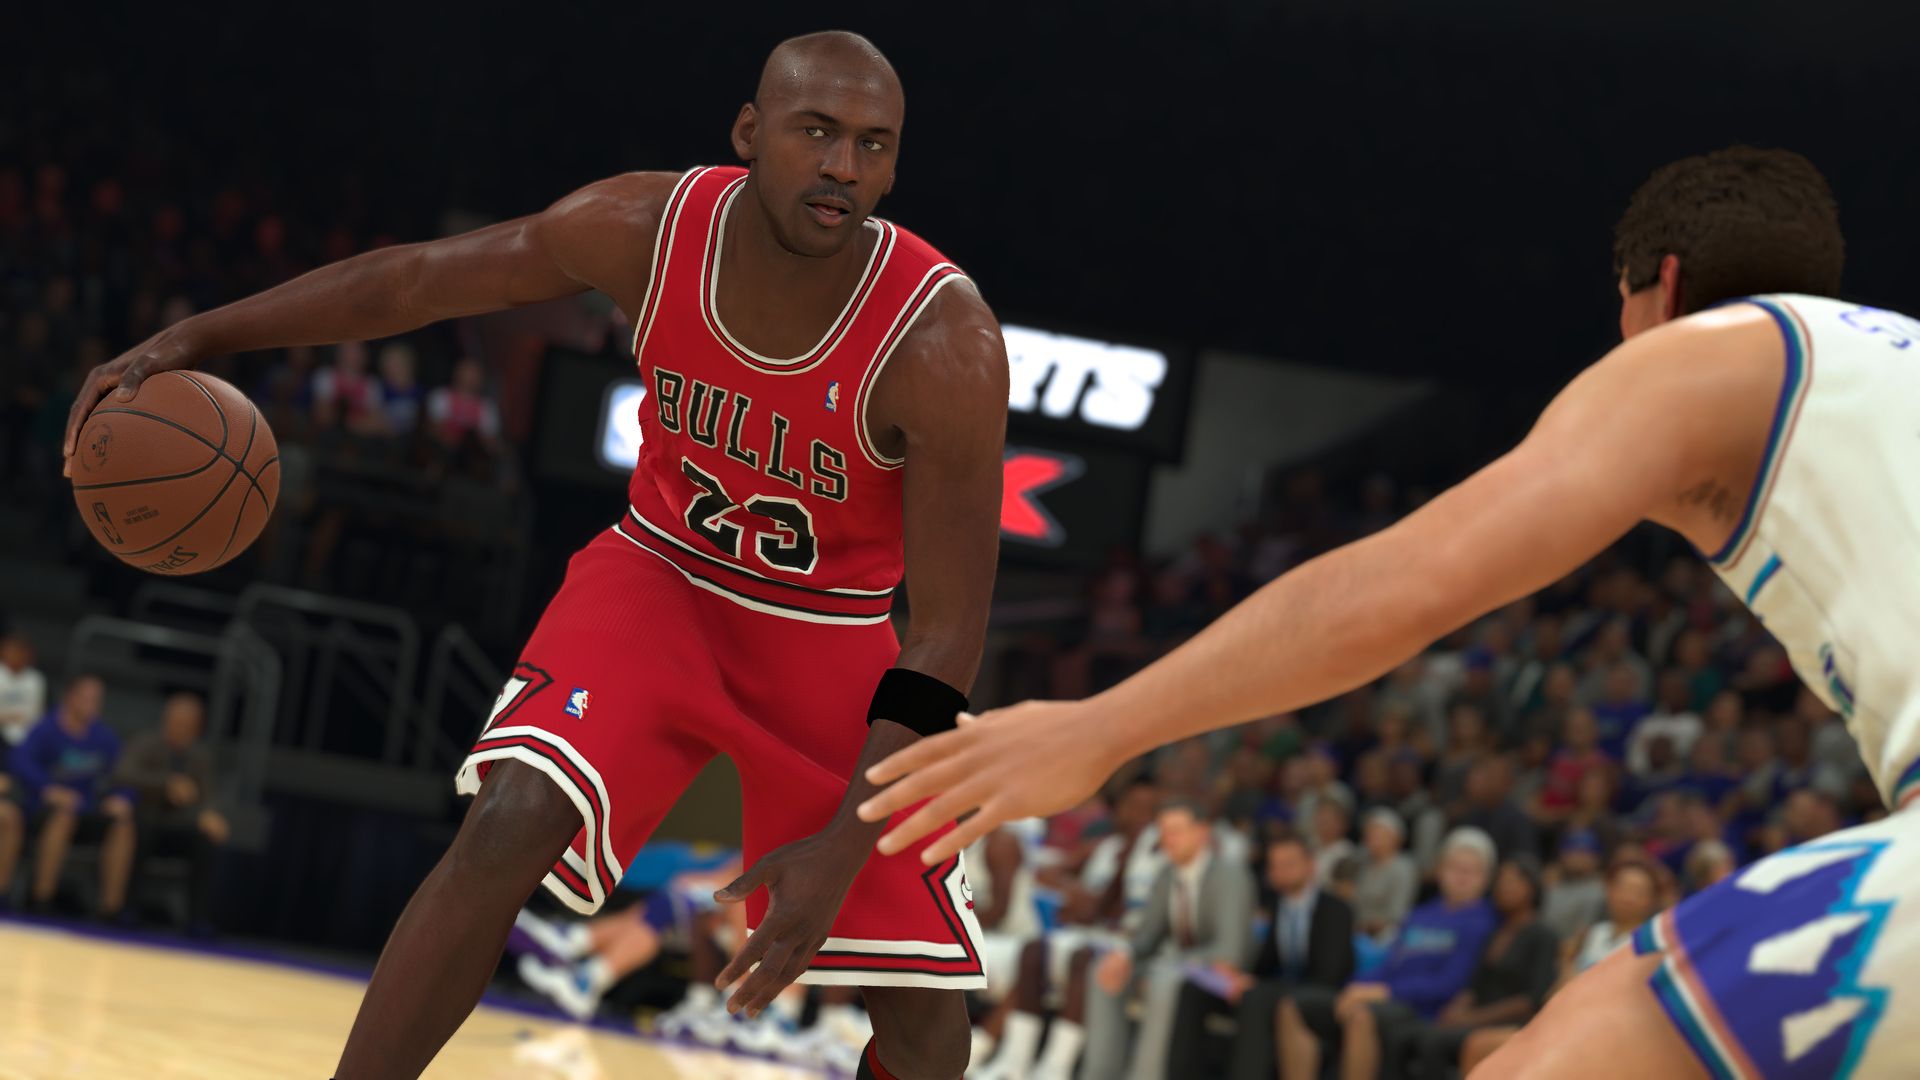 Video game screenshot of Michael Jordan playing basketball